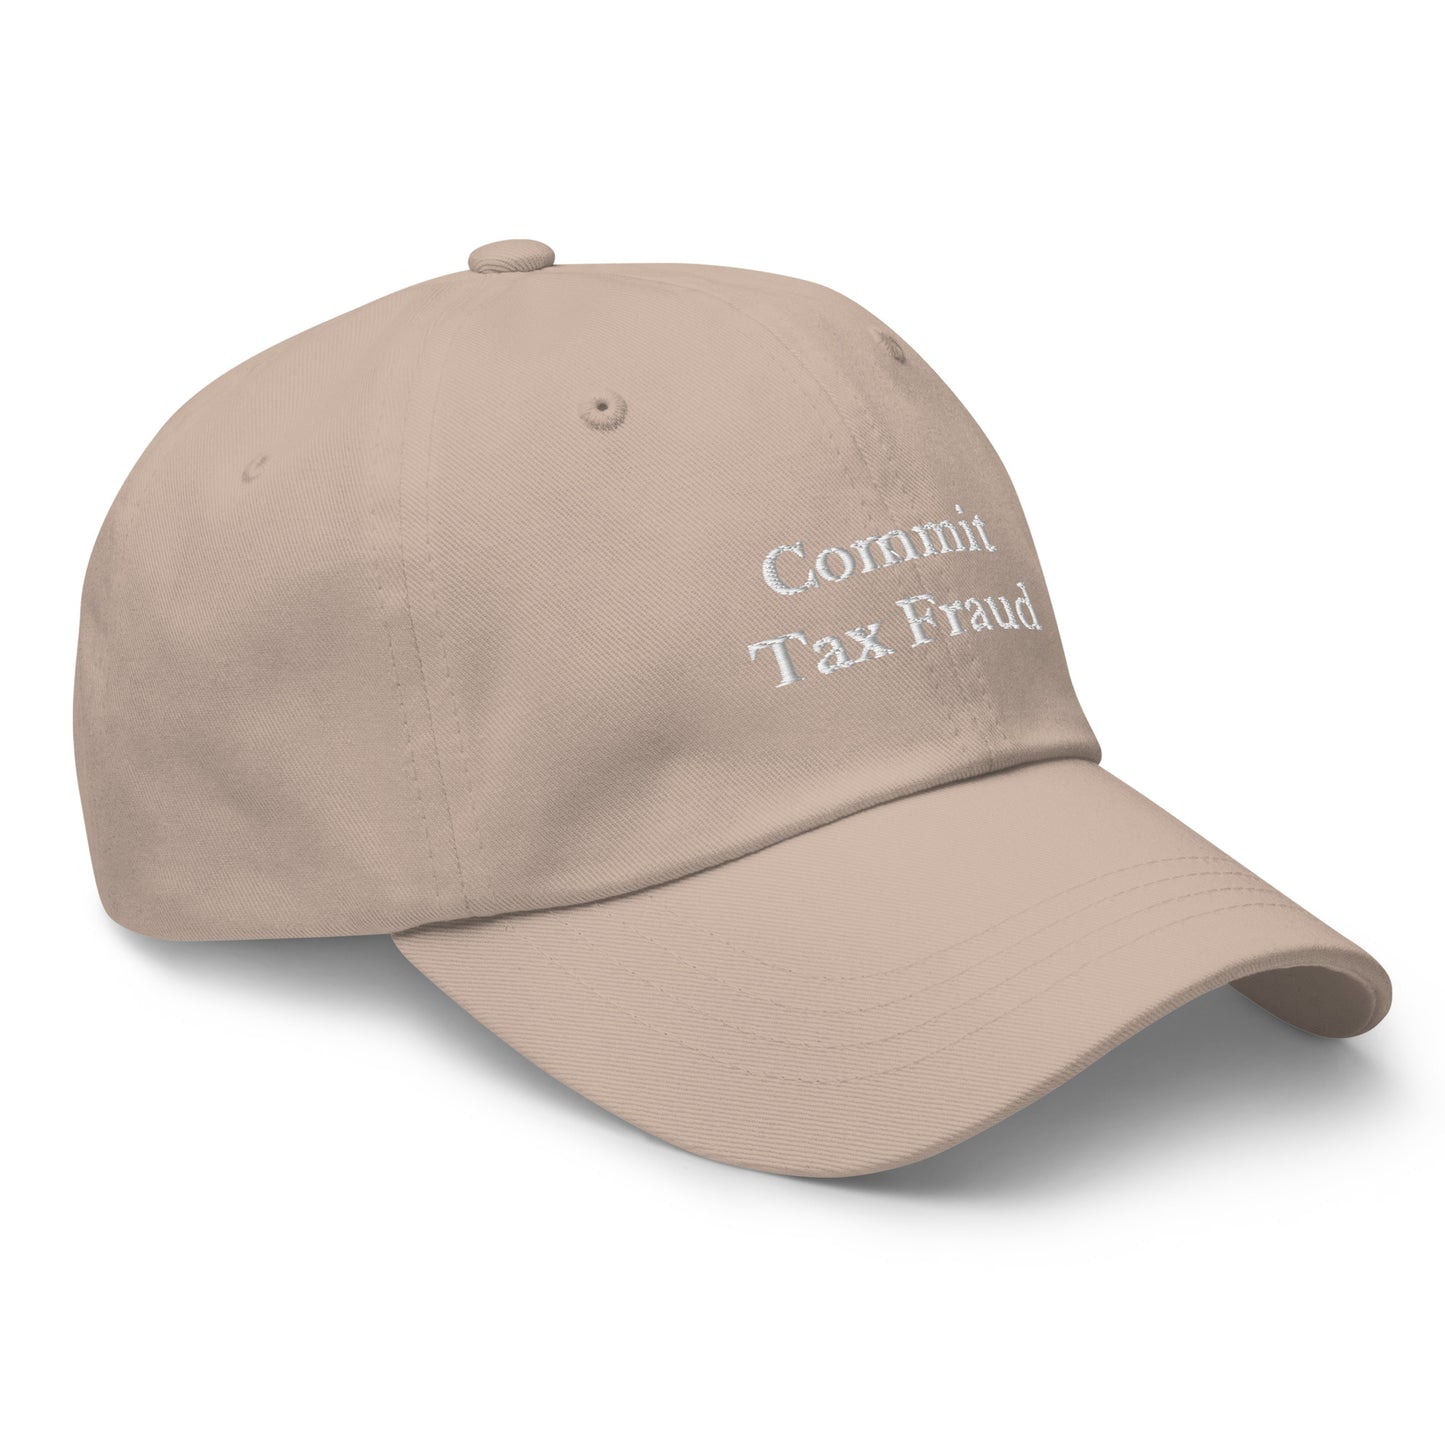 Commit Tax Fraud Cap